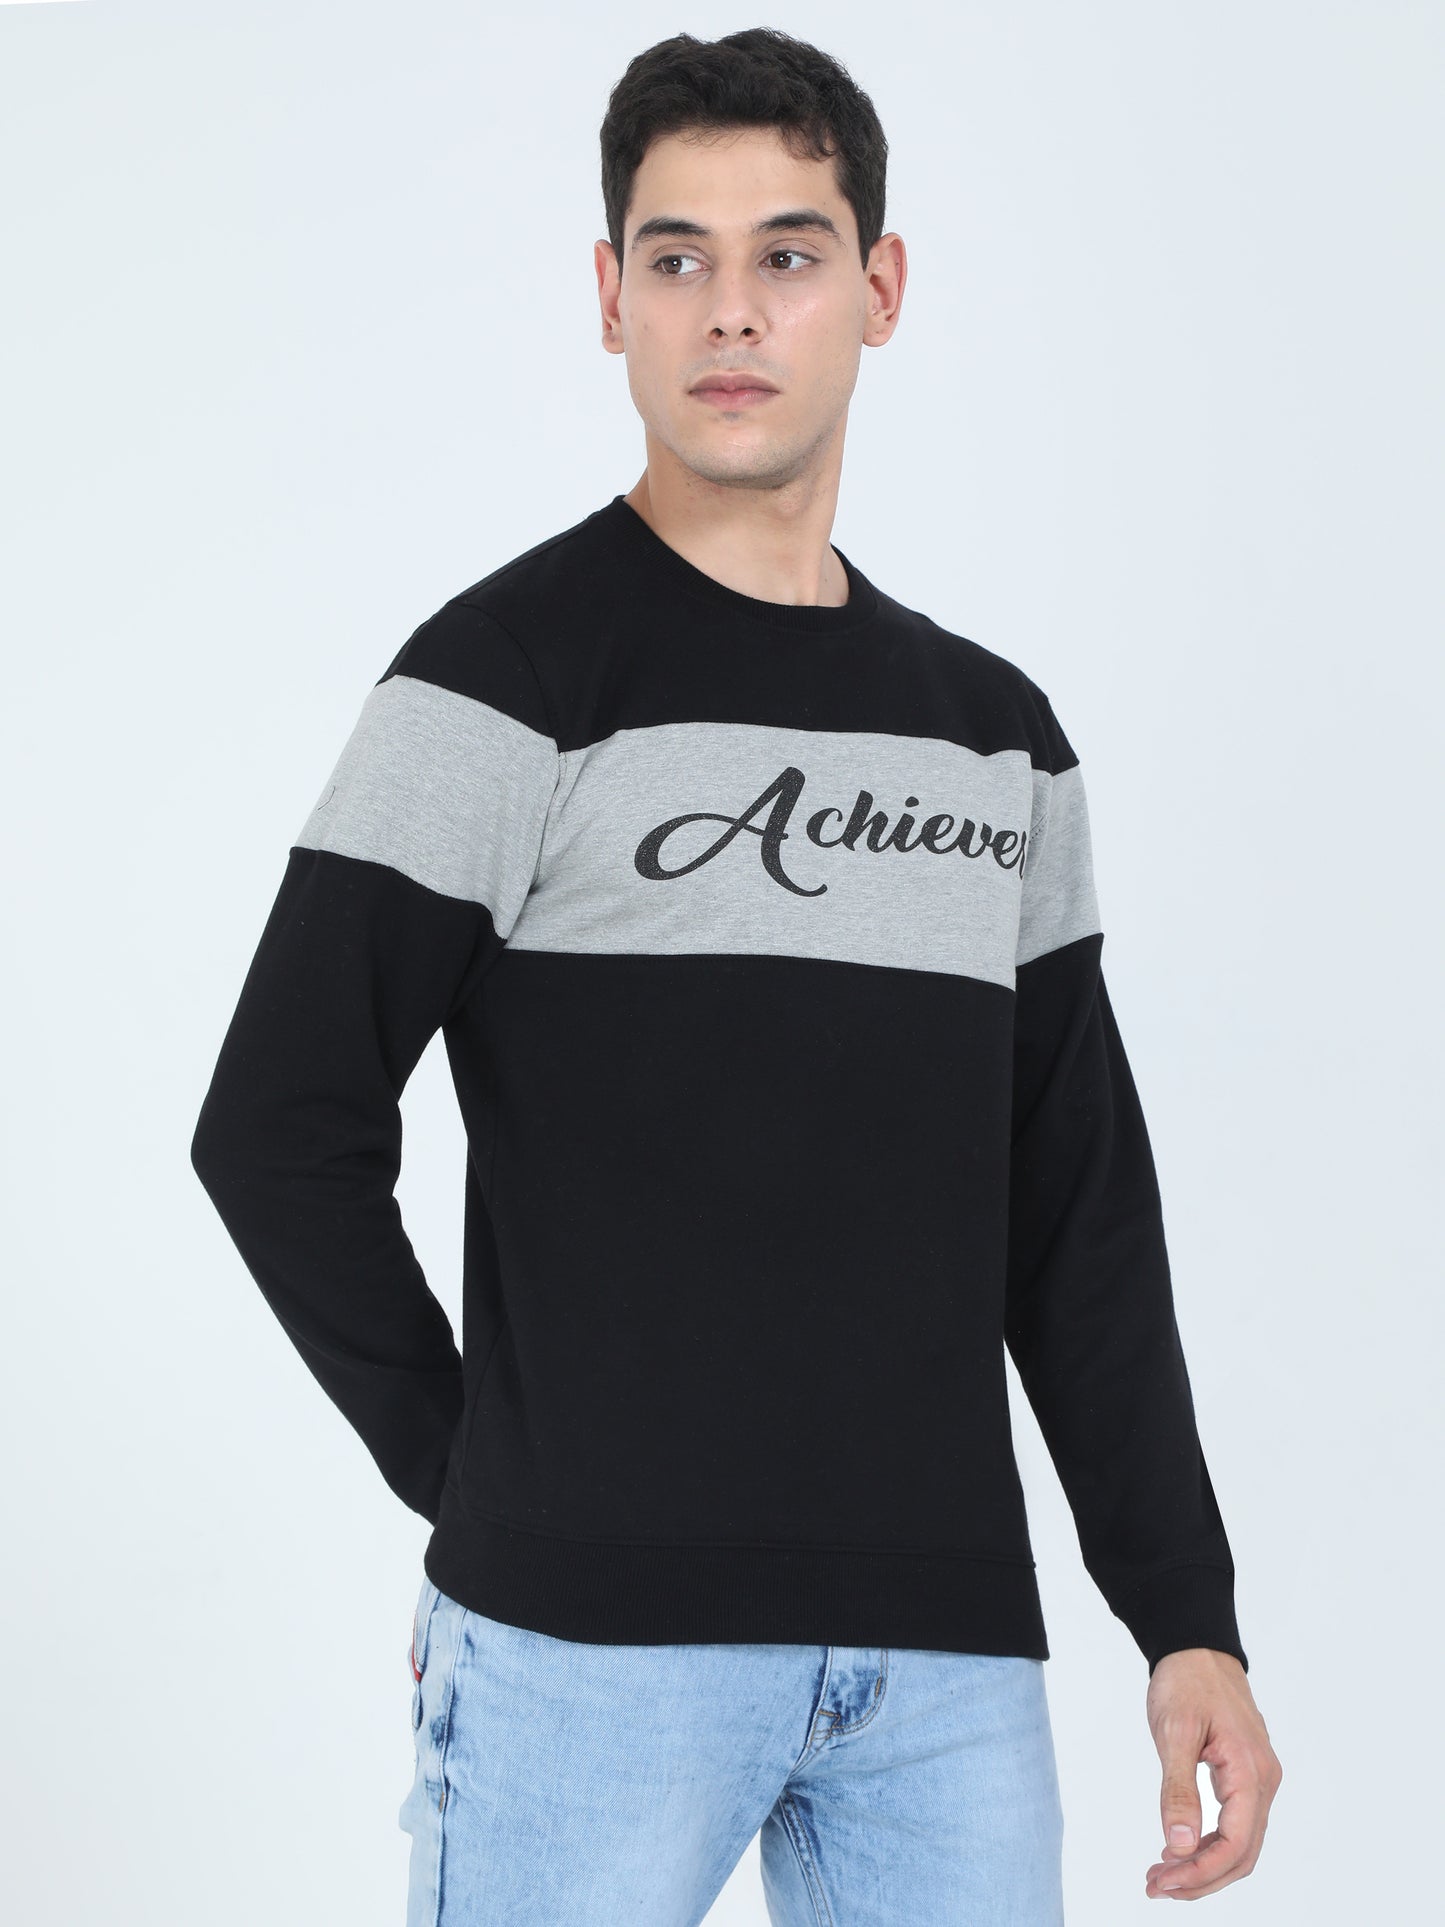 Men's Cotton Printed Color Block Greyblack Color Sweatshirt